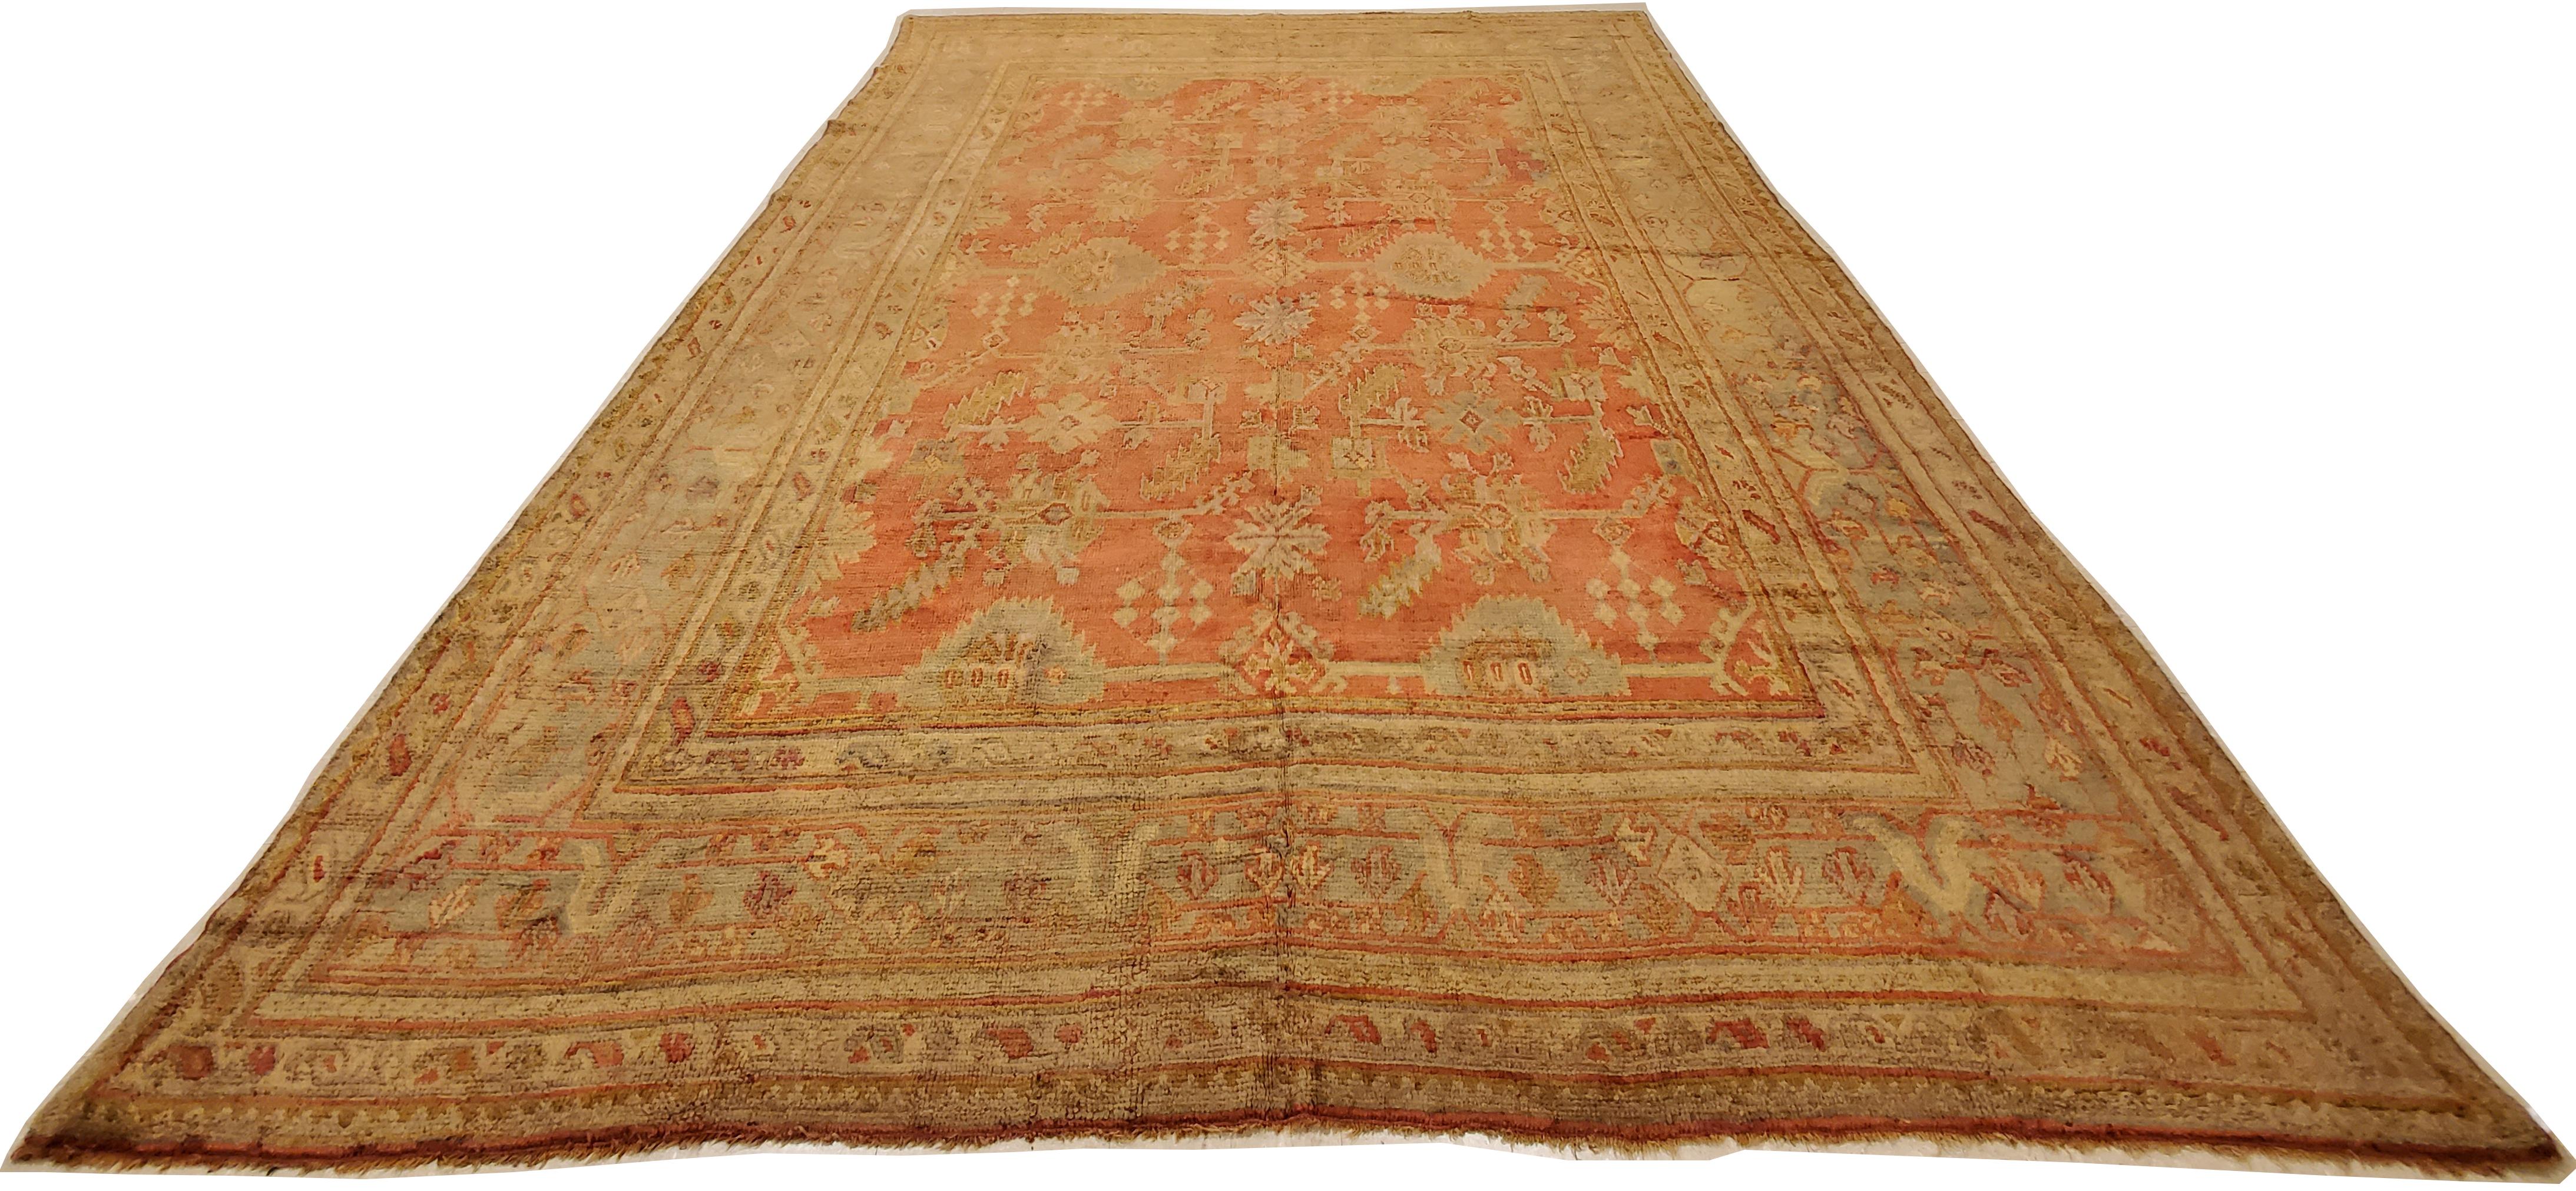 Oushak-Teppiche, die auch als Ushak-Teppiche bekannt sind, werden in der Westtürkei gewebt und haben ausgeprägte Muster, wie z. B. eckige, großflächige Blumenmuster. In der Regel strahlen sie Ruhe und Frieden in einem Raum aus. Bis heute werden die